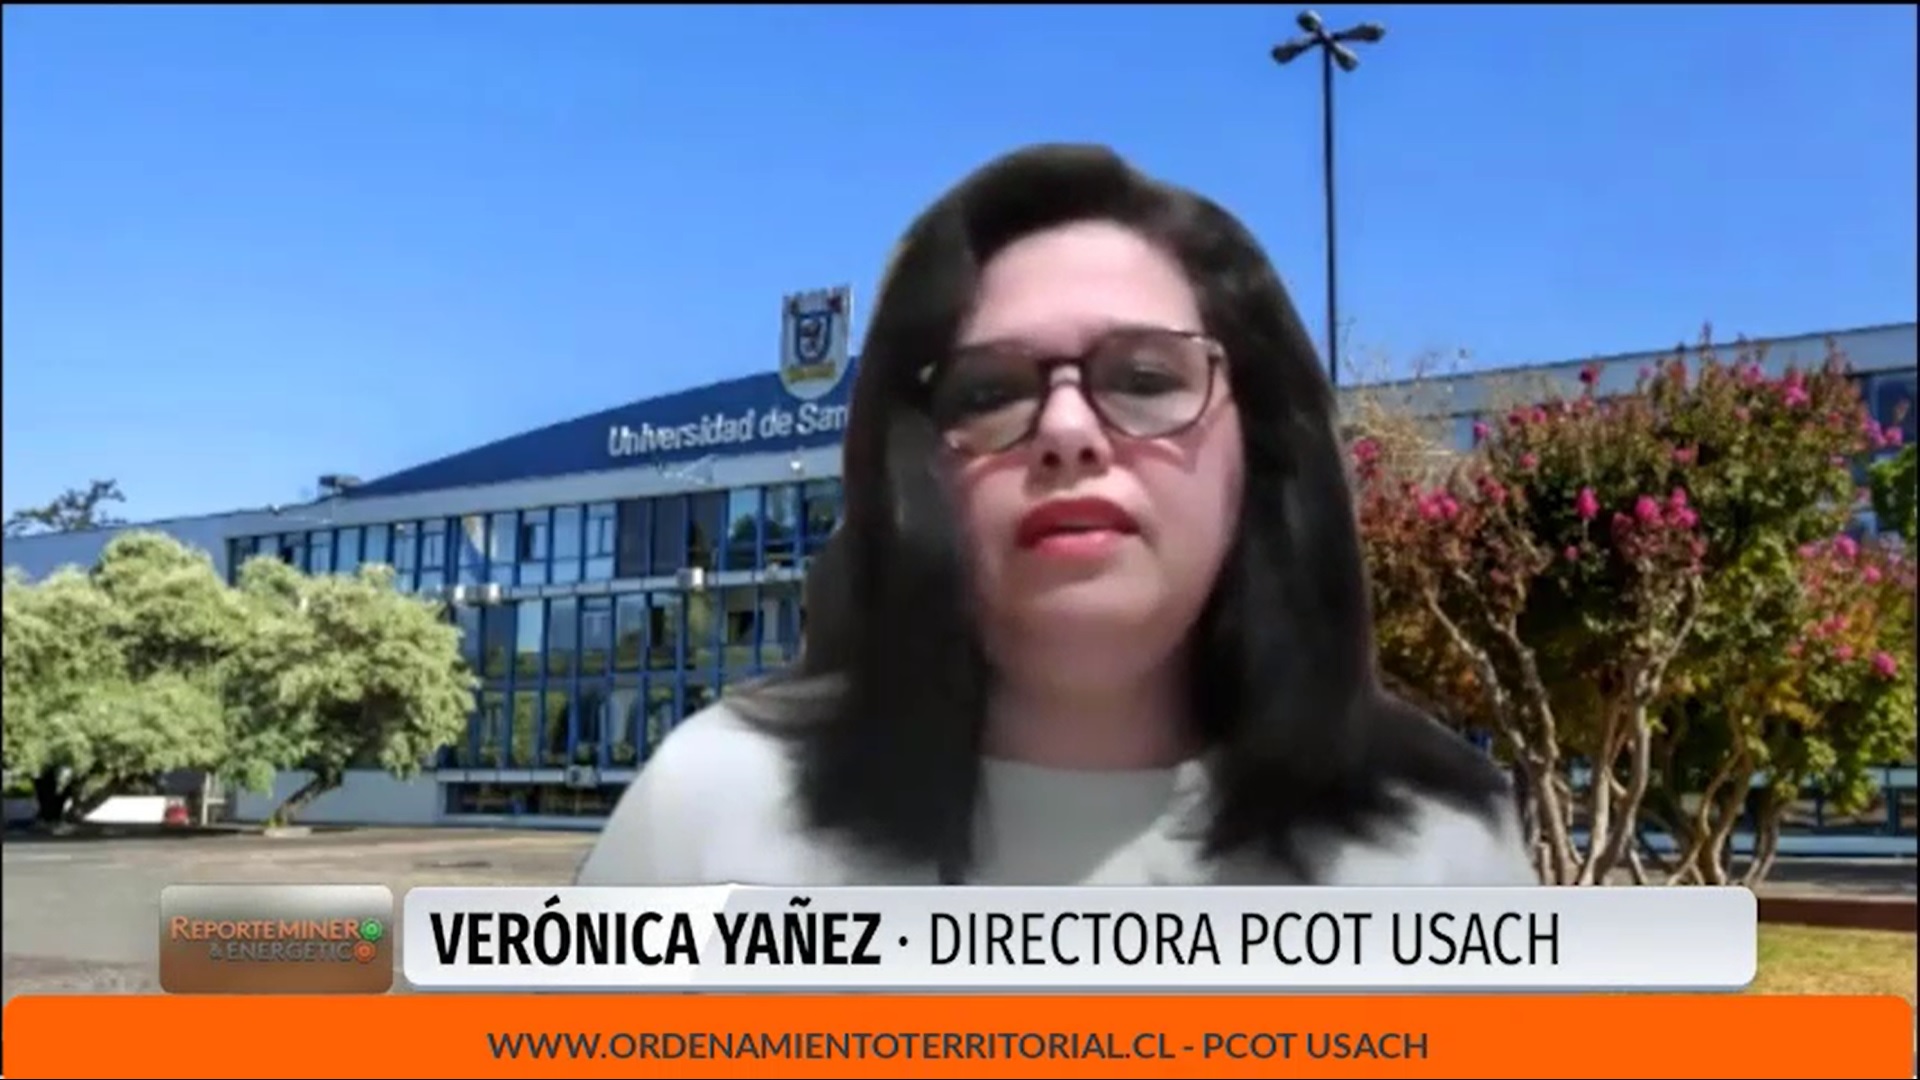 Verónica Yáñez Directora PCOT USACH en Reporte Minero